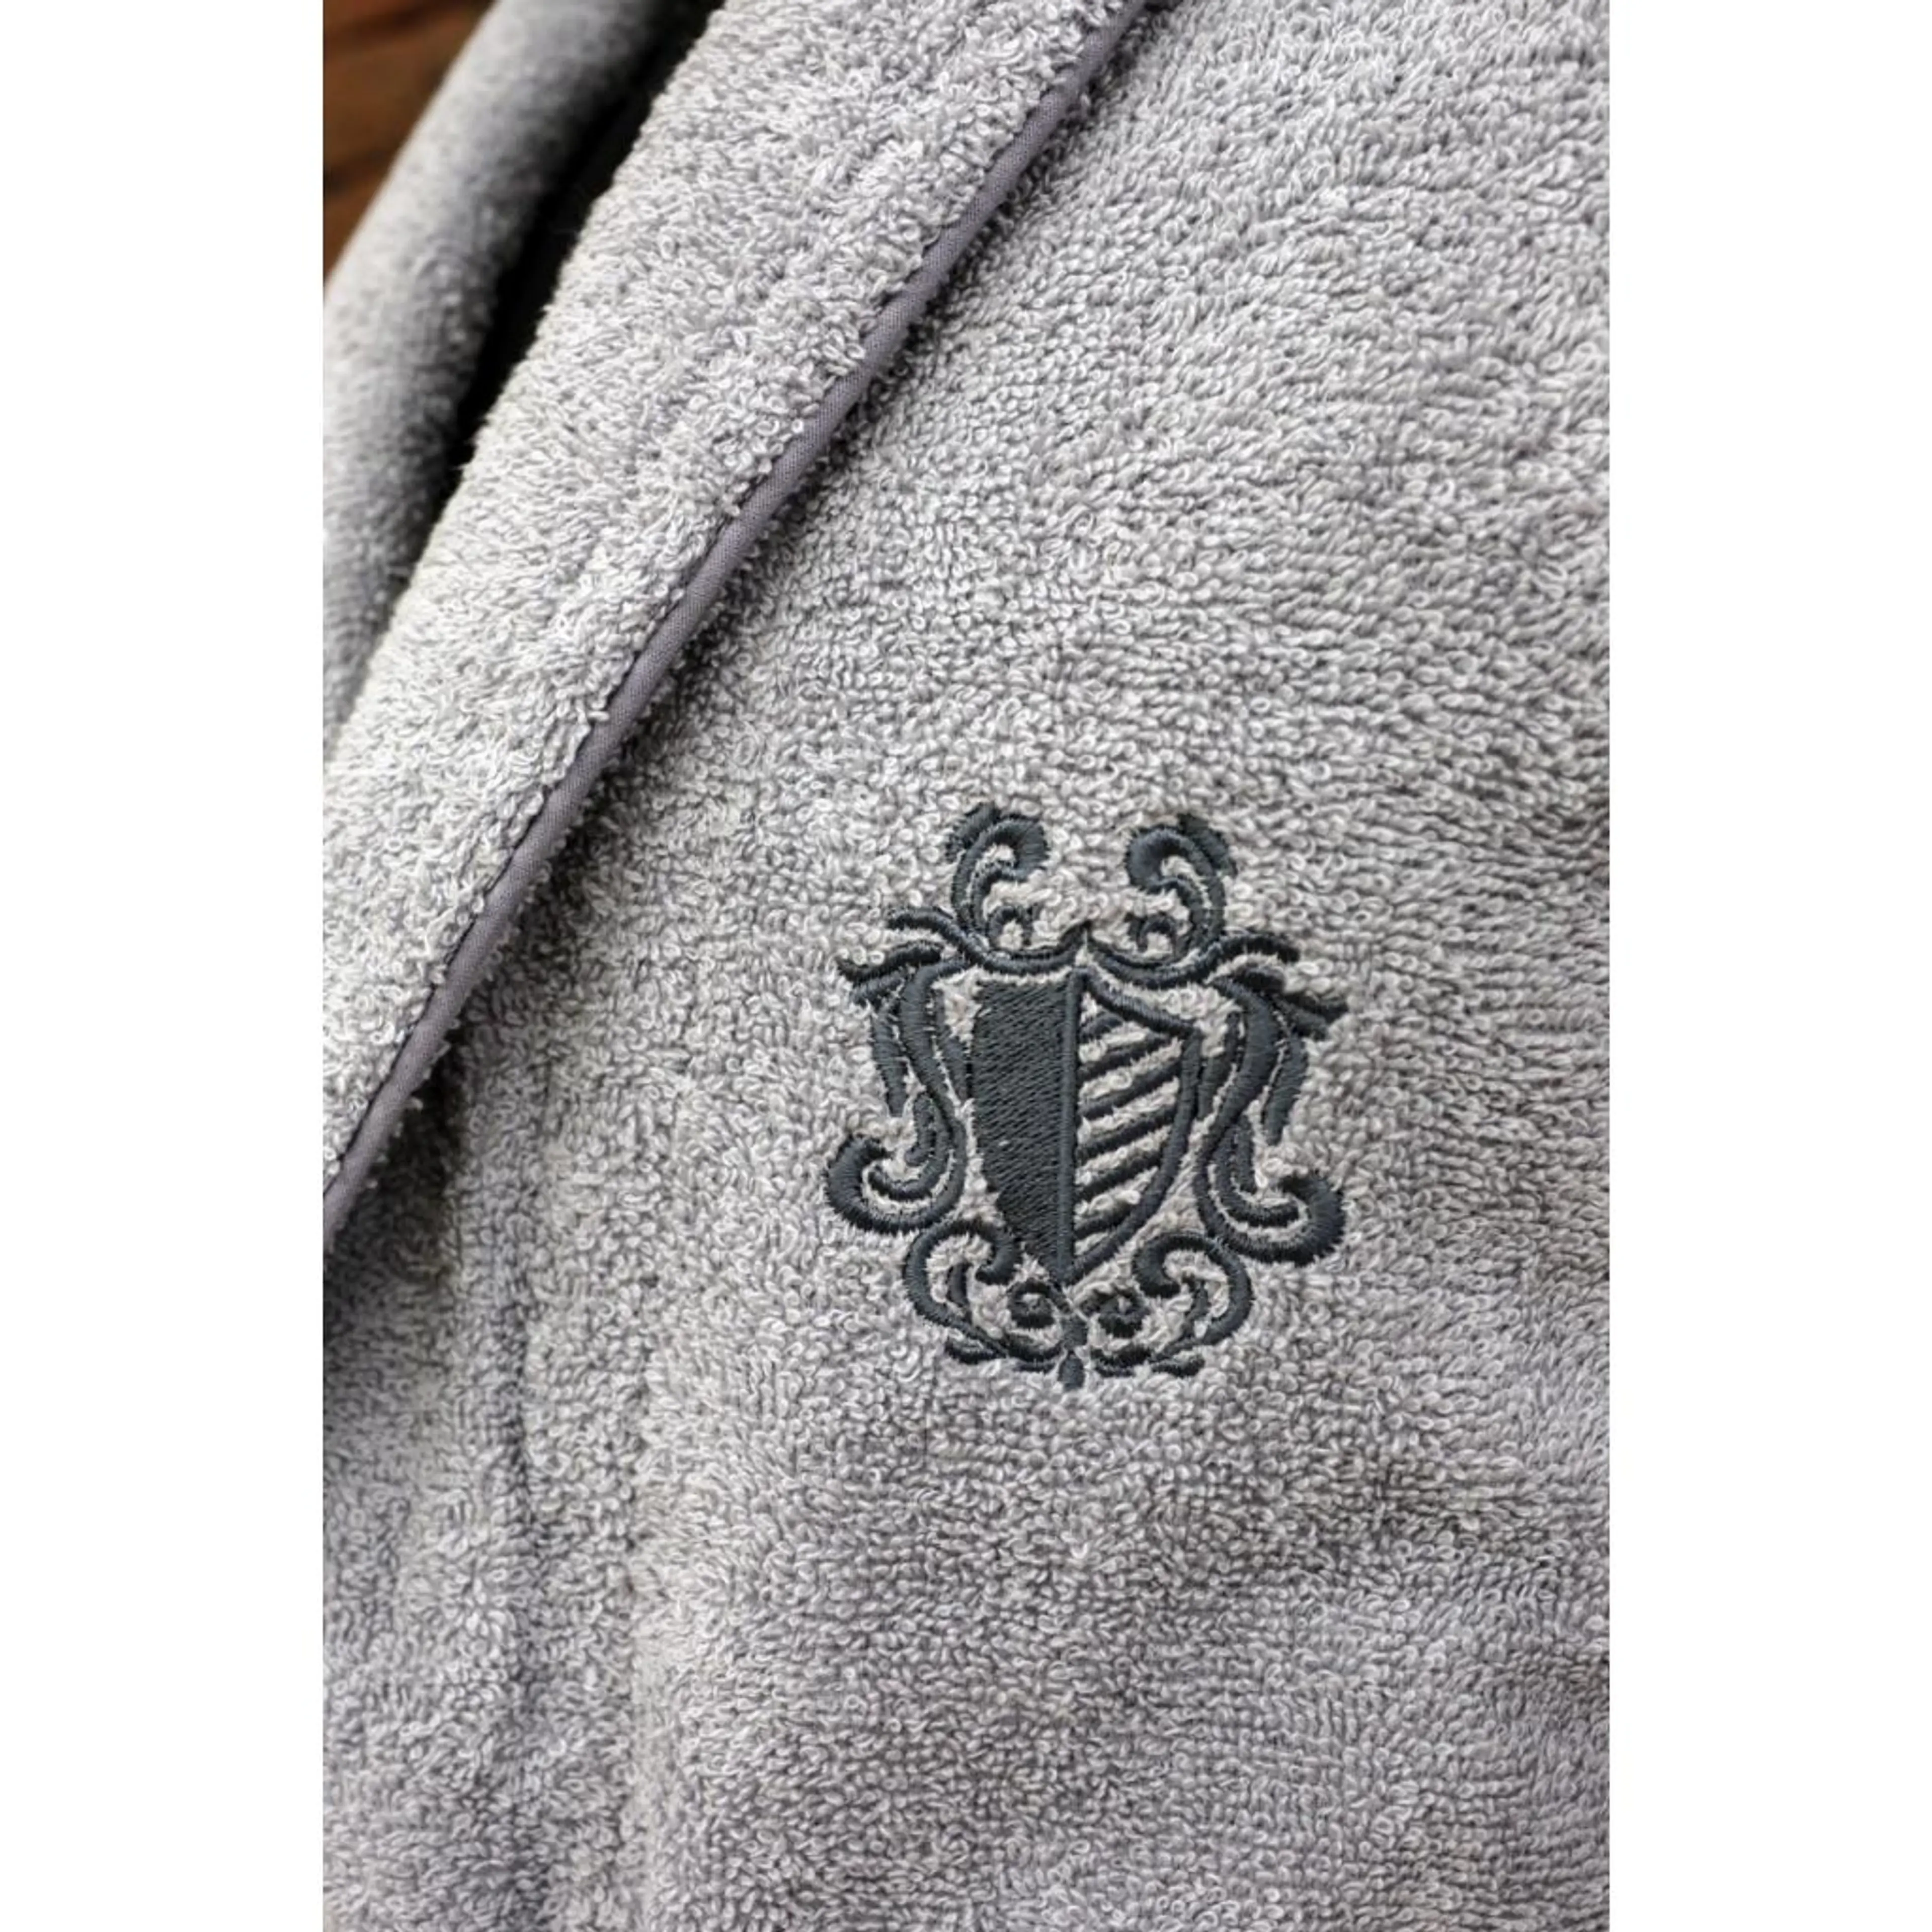 Комплект халати KAZEL, Molly + 4 кърпи подарък S/M, M/L S/M, M/L сив/сив